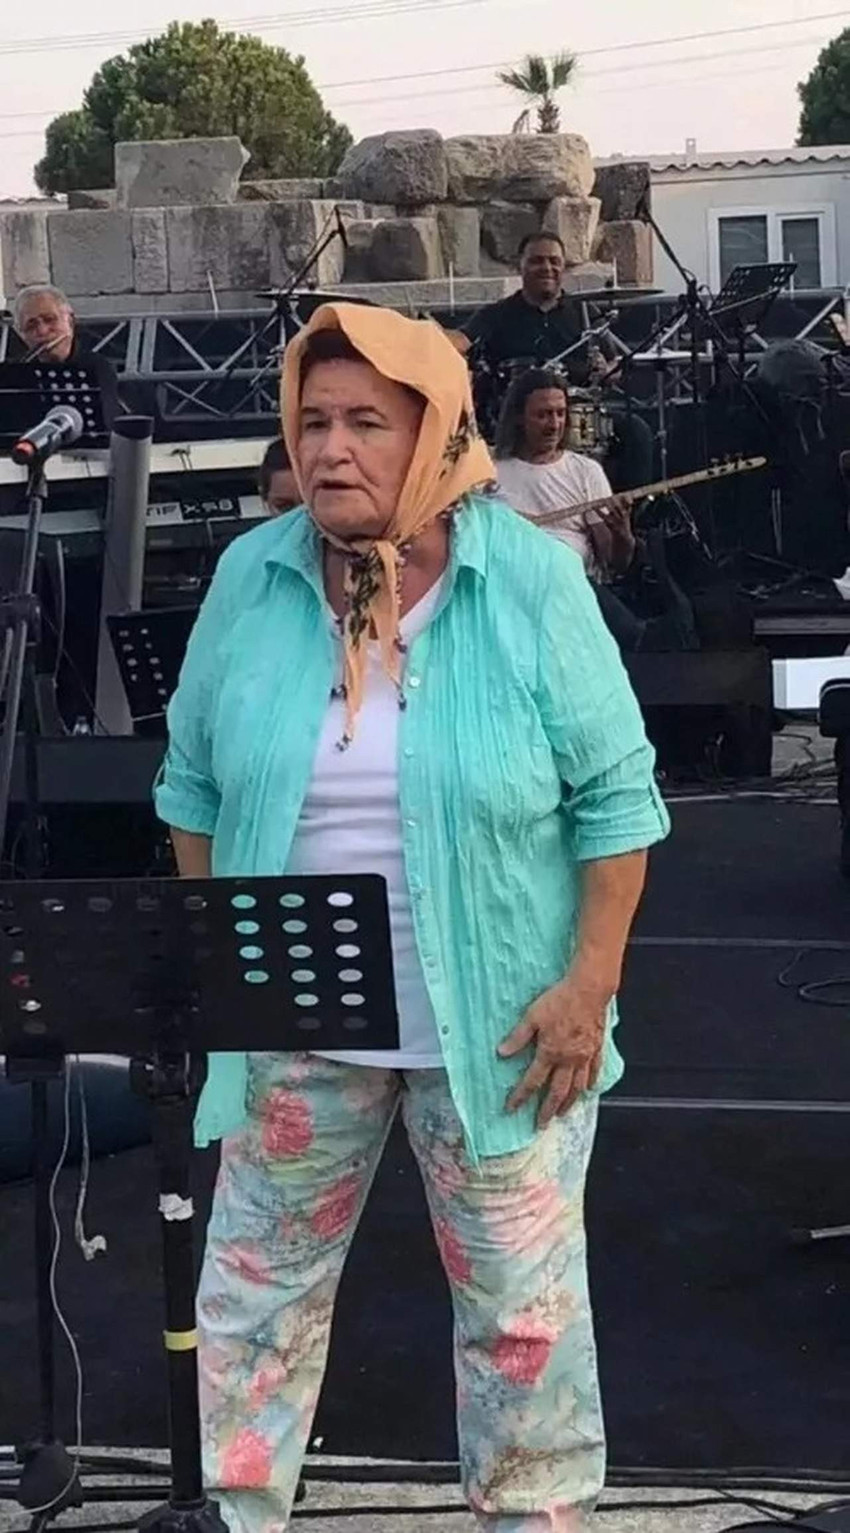 Usta sanatçı Selda Bağcan'ın konser provası için seçtiği kıyafet sosyal medya kullanıcılarının gündemindeydi. Başörtülü haliyle görüntüleri paylaşılan Bağcan, 'Ne var bunda?' dedi.